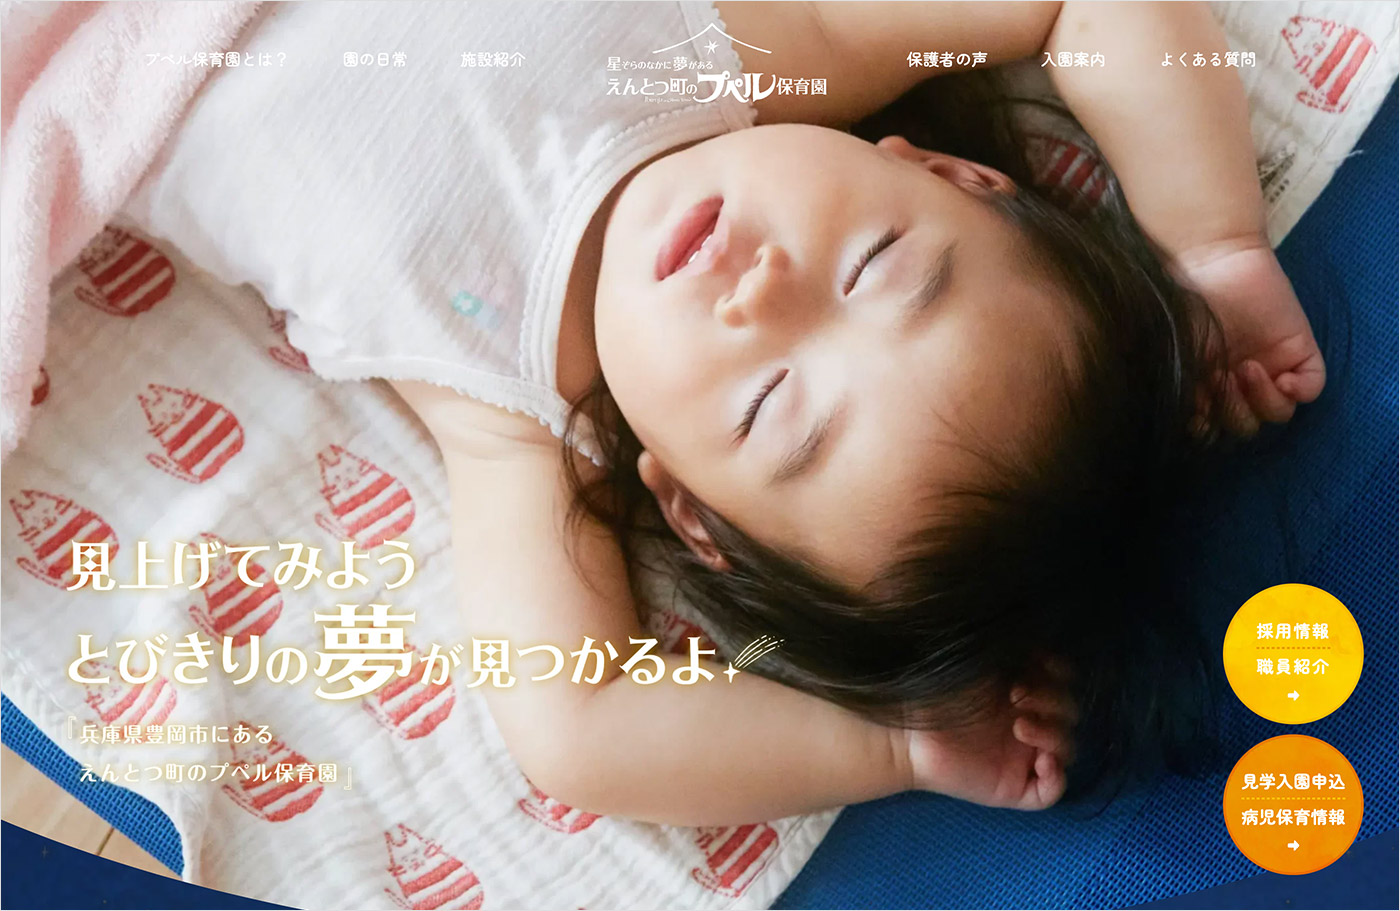 えんとつ町のプペル保育園 – 兵庫県豊岡市の企業主導型保育園ウェブサイトの画面キャプチャ画像